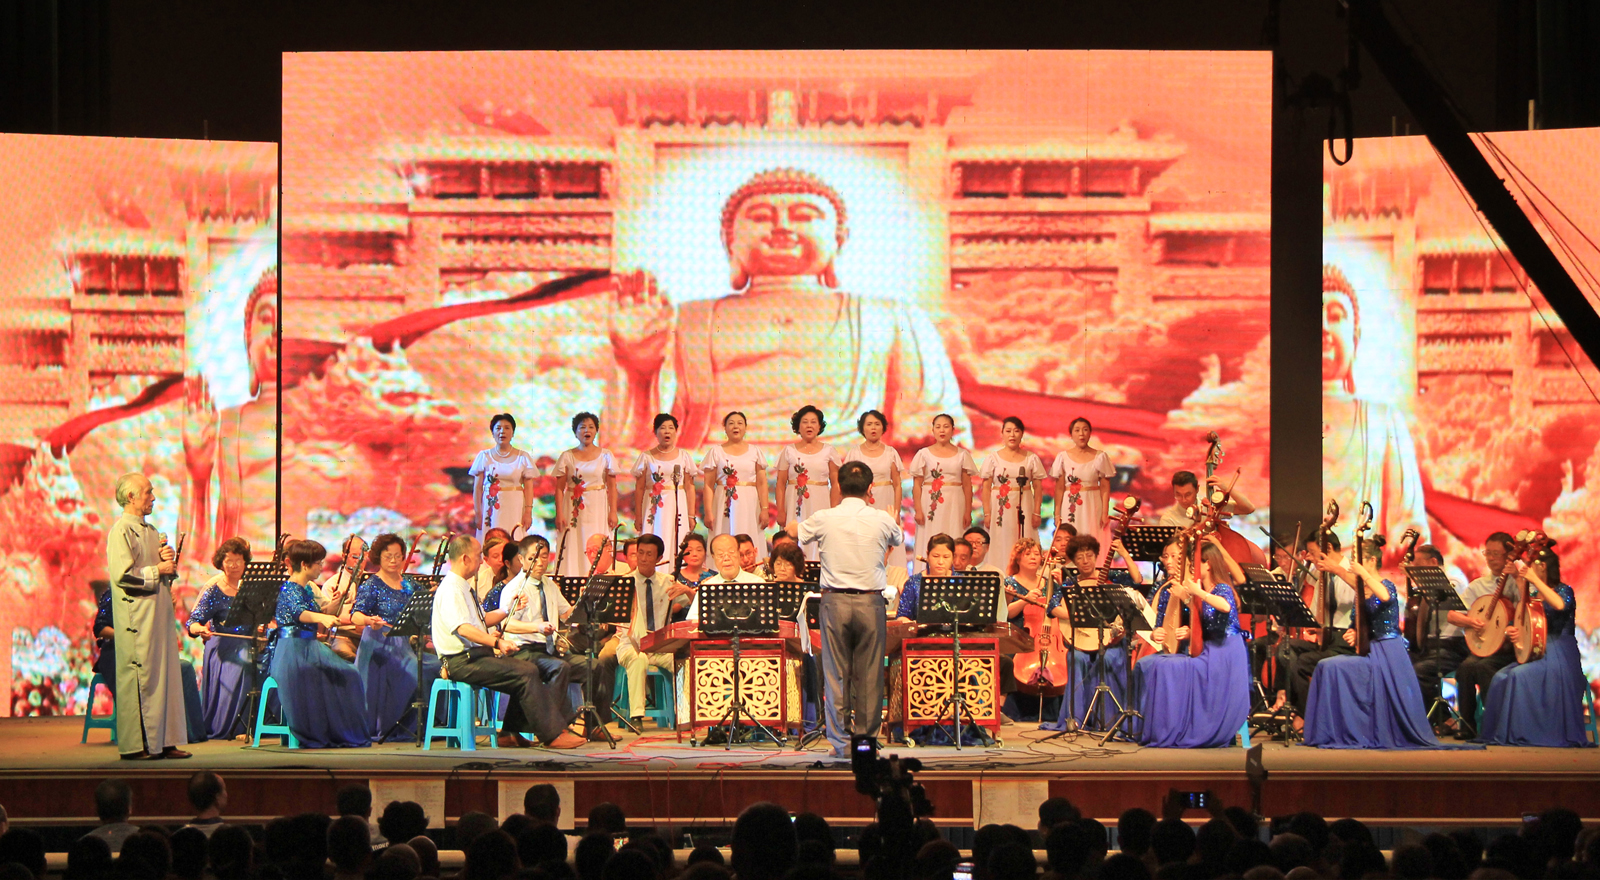 安徽梵呗艺术团文艺演出节目:民乐合奏《》